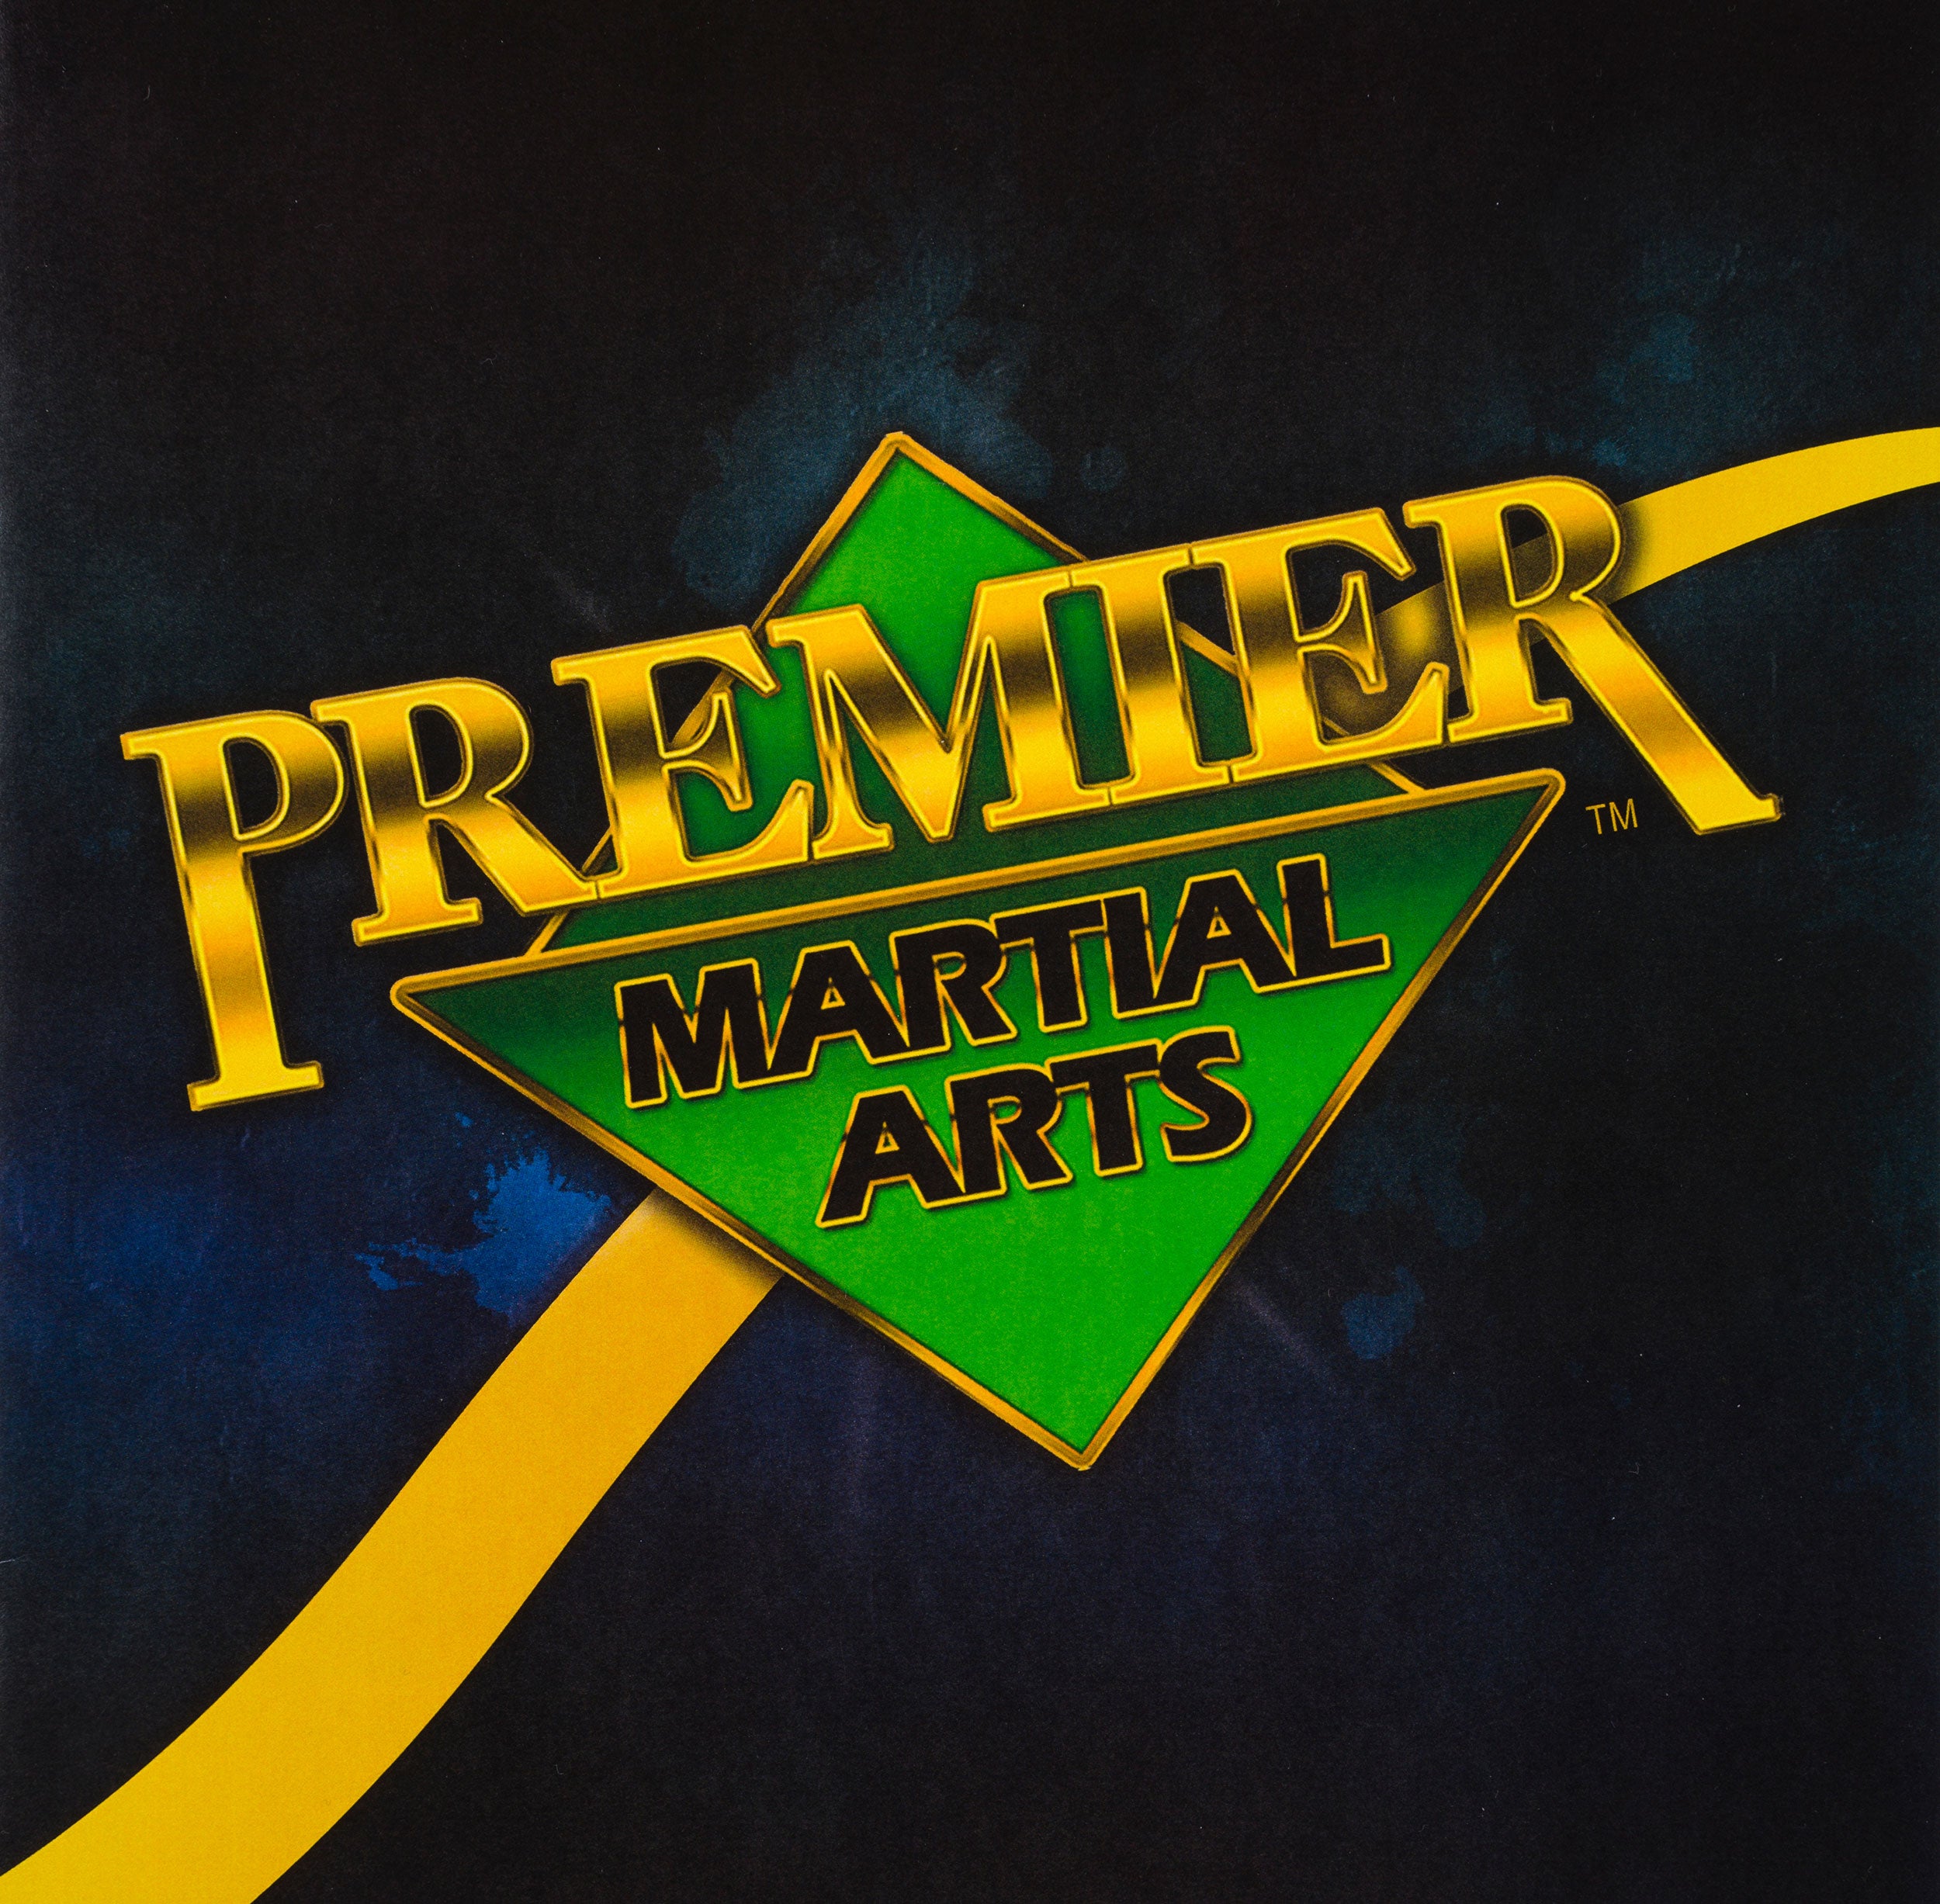 premier martial arts logo